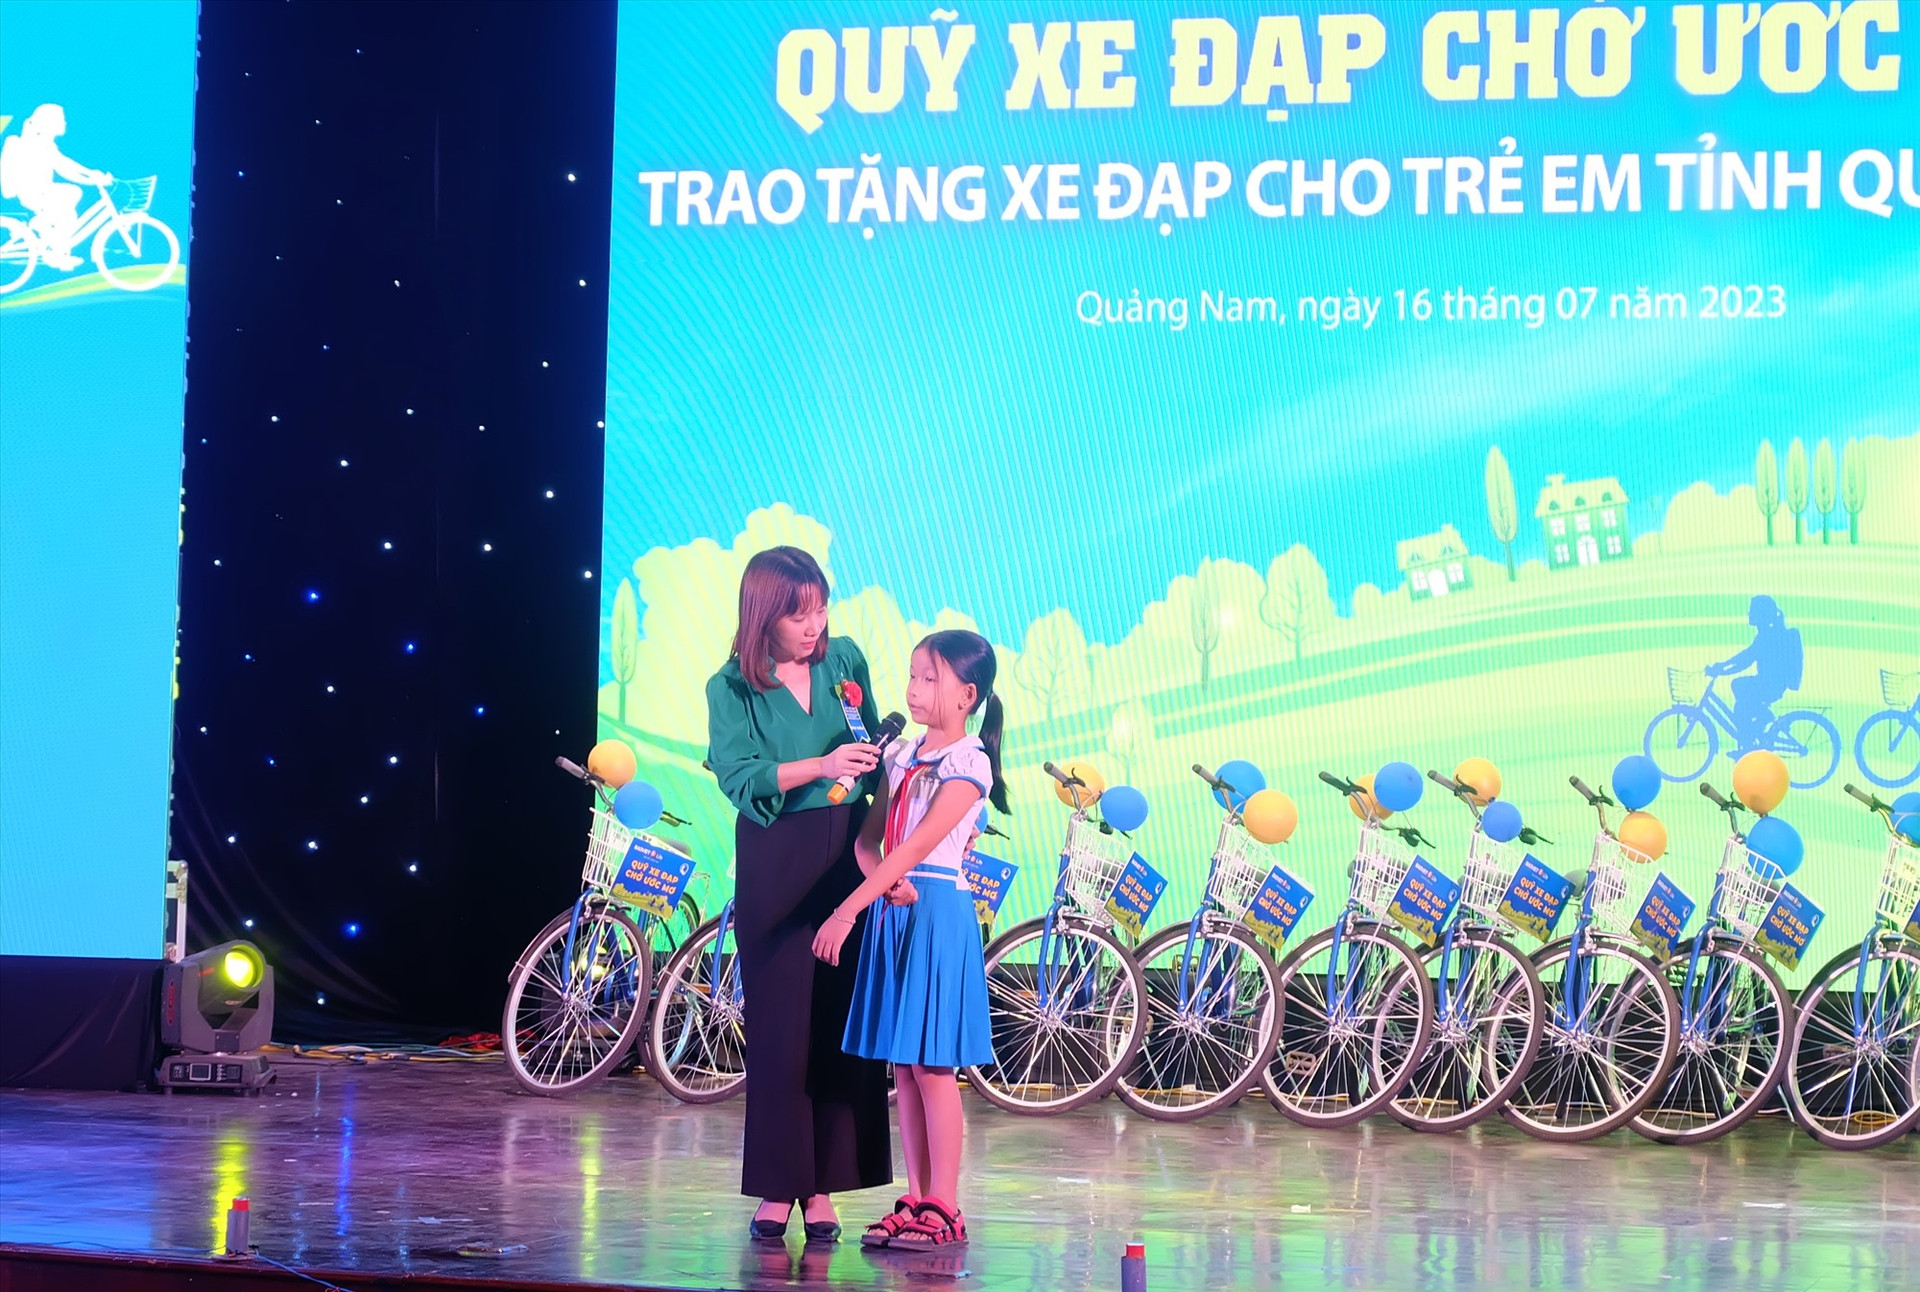 Bà Vũ Thị Thúy Huyền - Phó Giám đốc Quỹ Bảo trợ trẻ em Việt Nam giao lưu với một em học sinh nhận học bổng tại chương trình. Ảnh: M.L